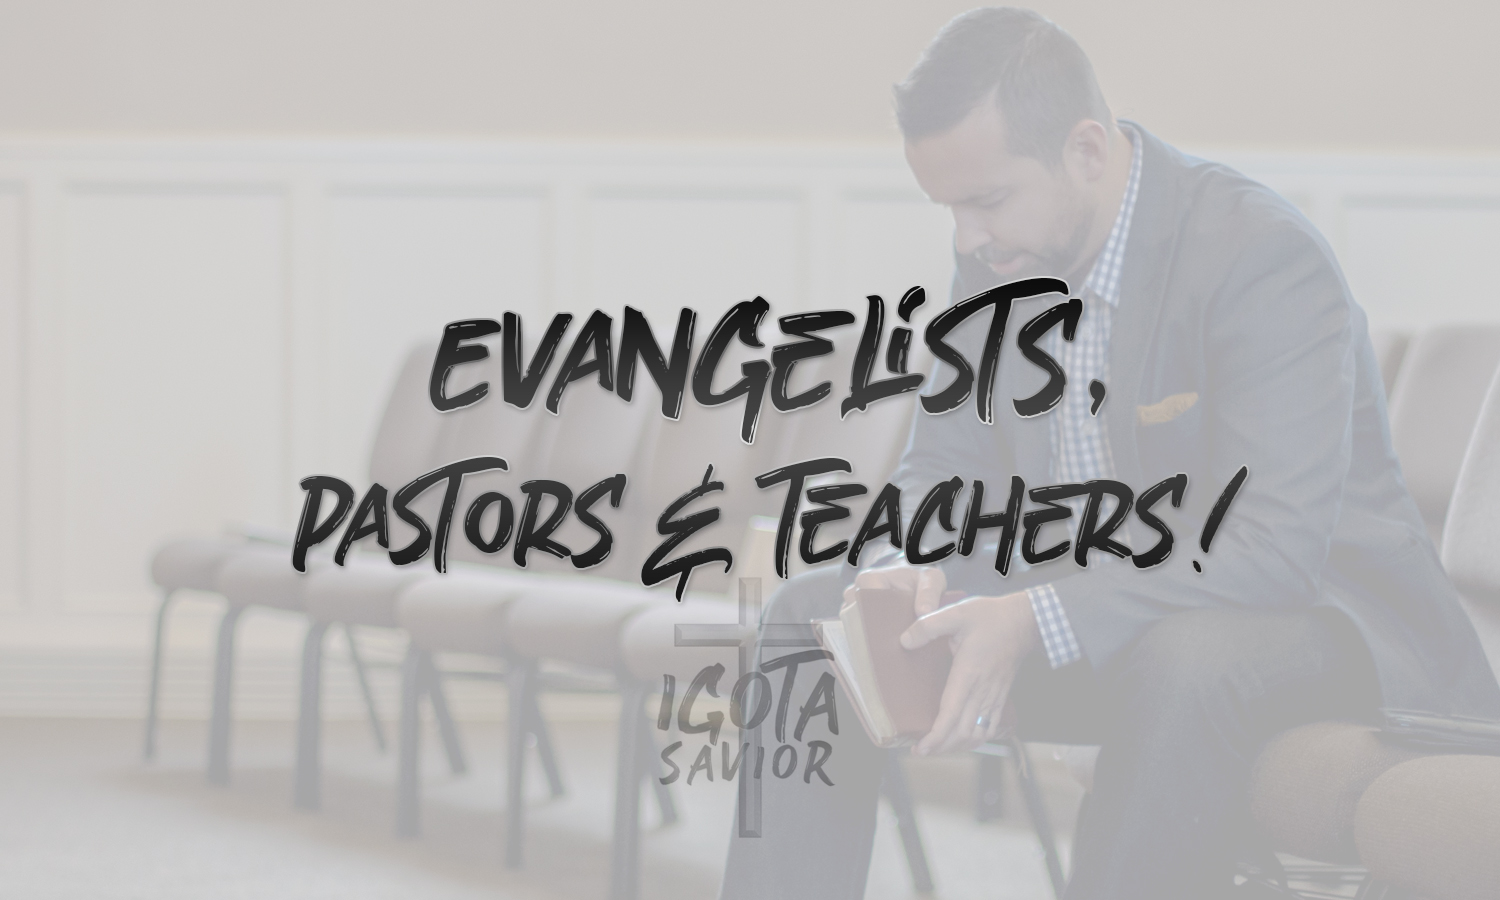 Evangelists, Pastors, & Teachers!